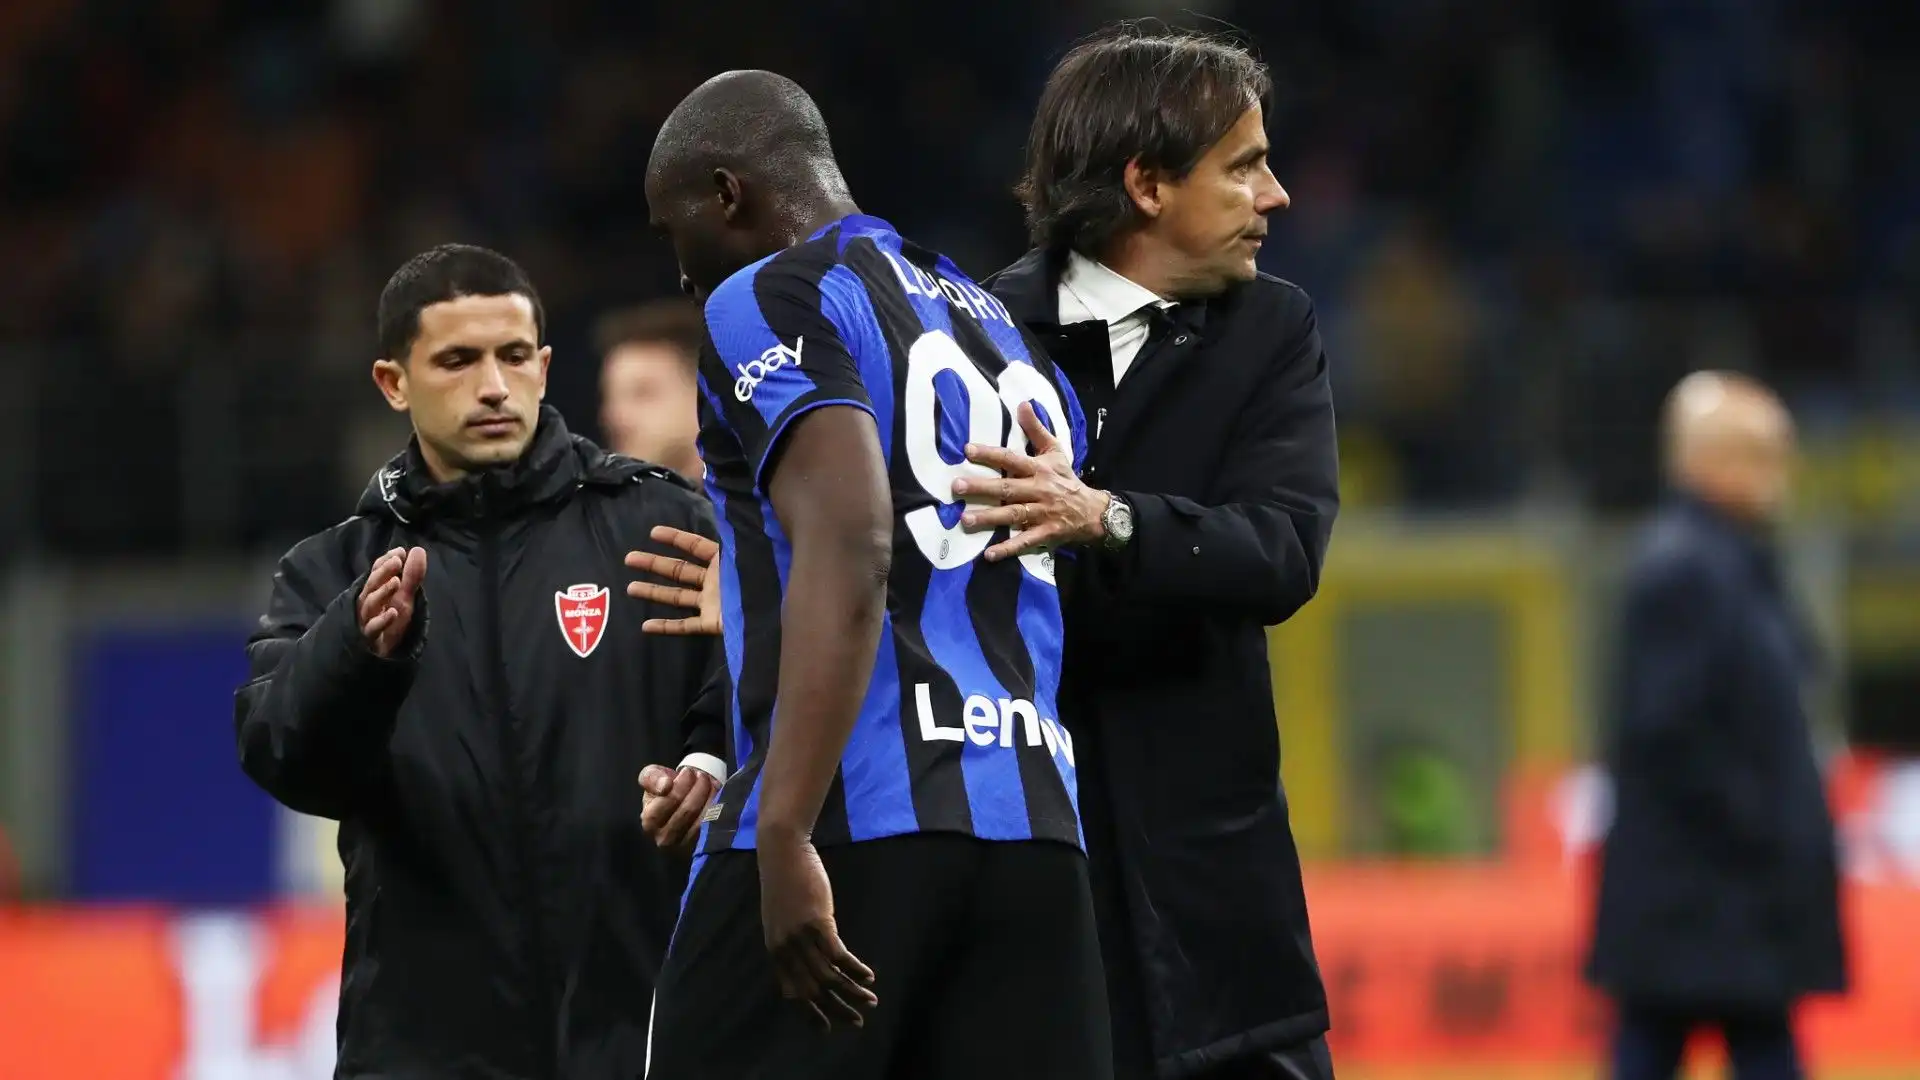 Nel caso in cui l'Inter non dovesse riscattare Lukaku, il calciatore tornerebbe al Chelsea dove però non c'è spazio per lui